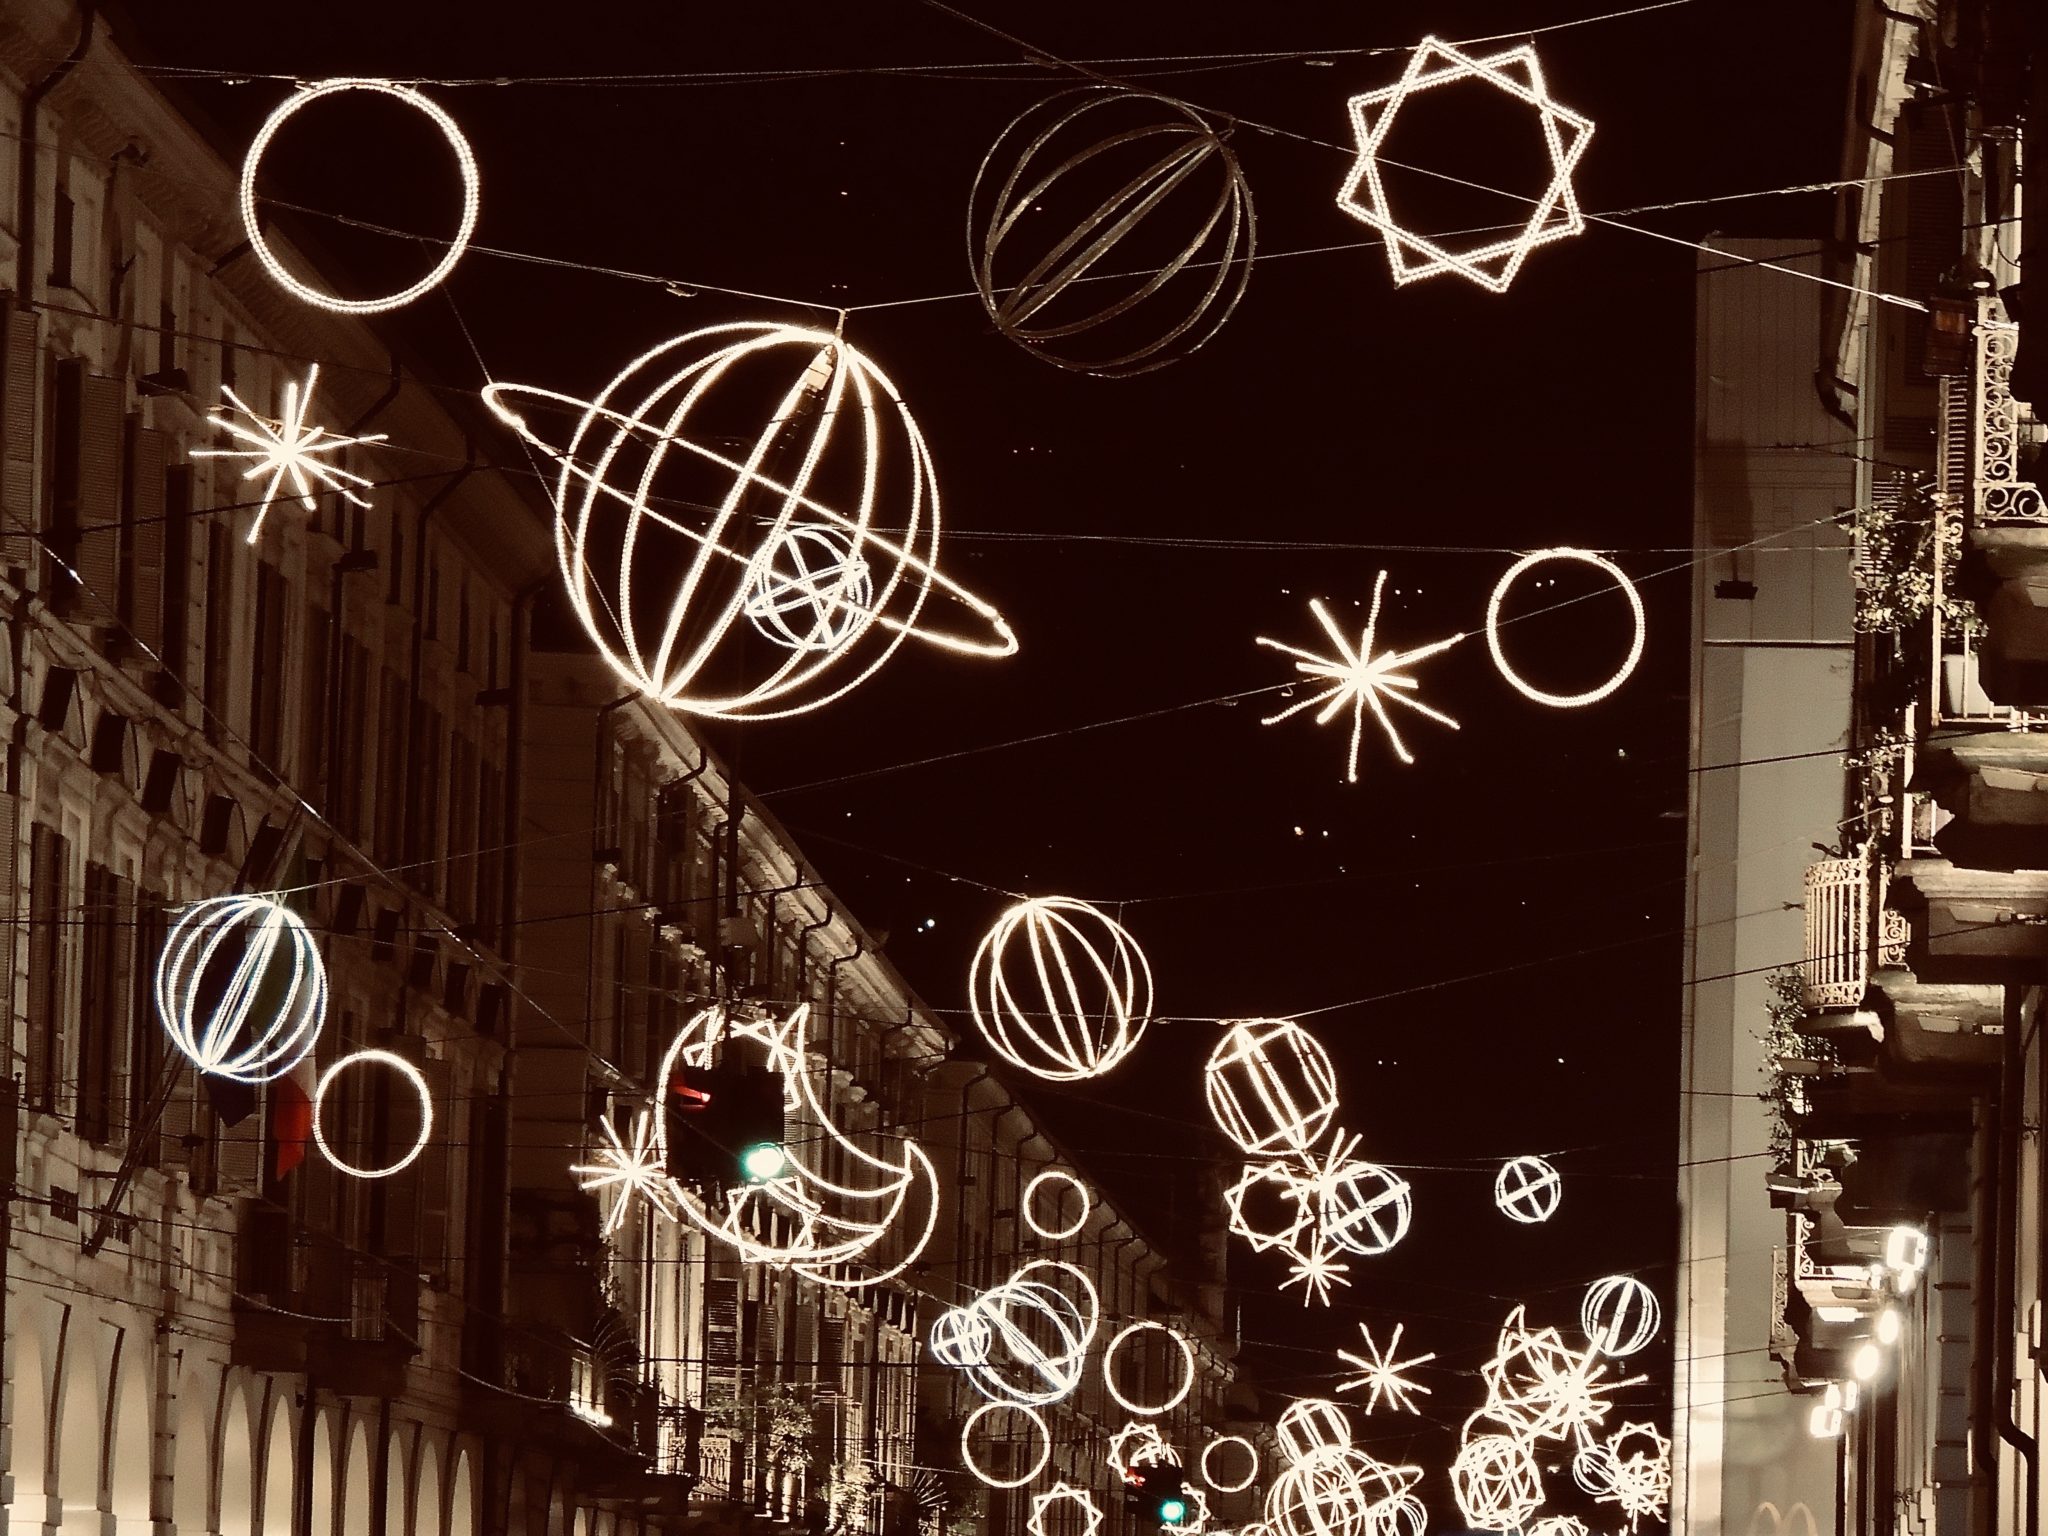 Michelangelo Pistoletto, Mario Merz, Valerio Berruti sono solo alcuni dei nomi di Luci d'Artista, che dal 1998 illumina Torino durante le feste di Natale